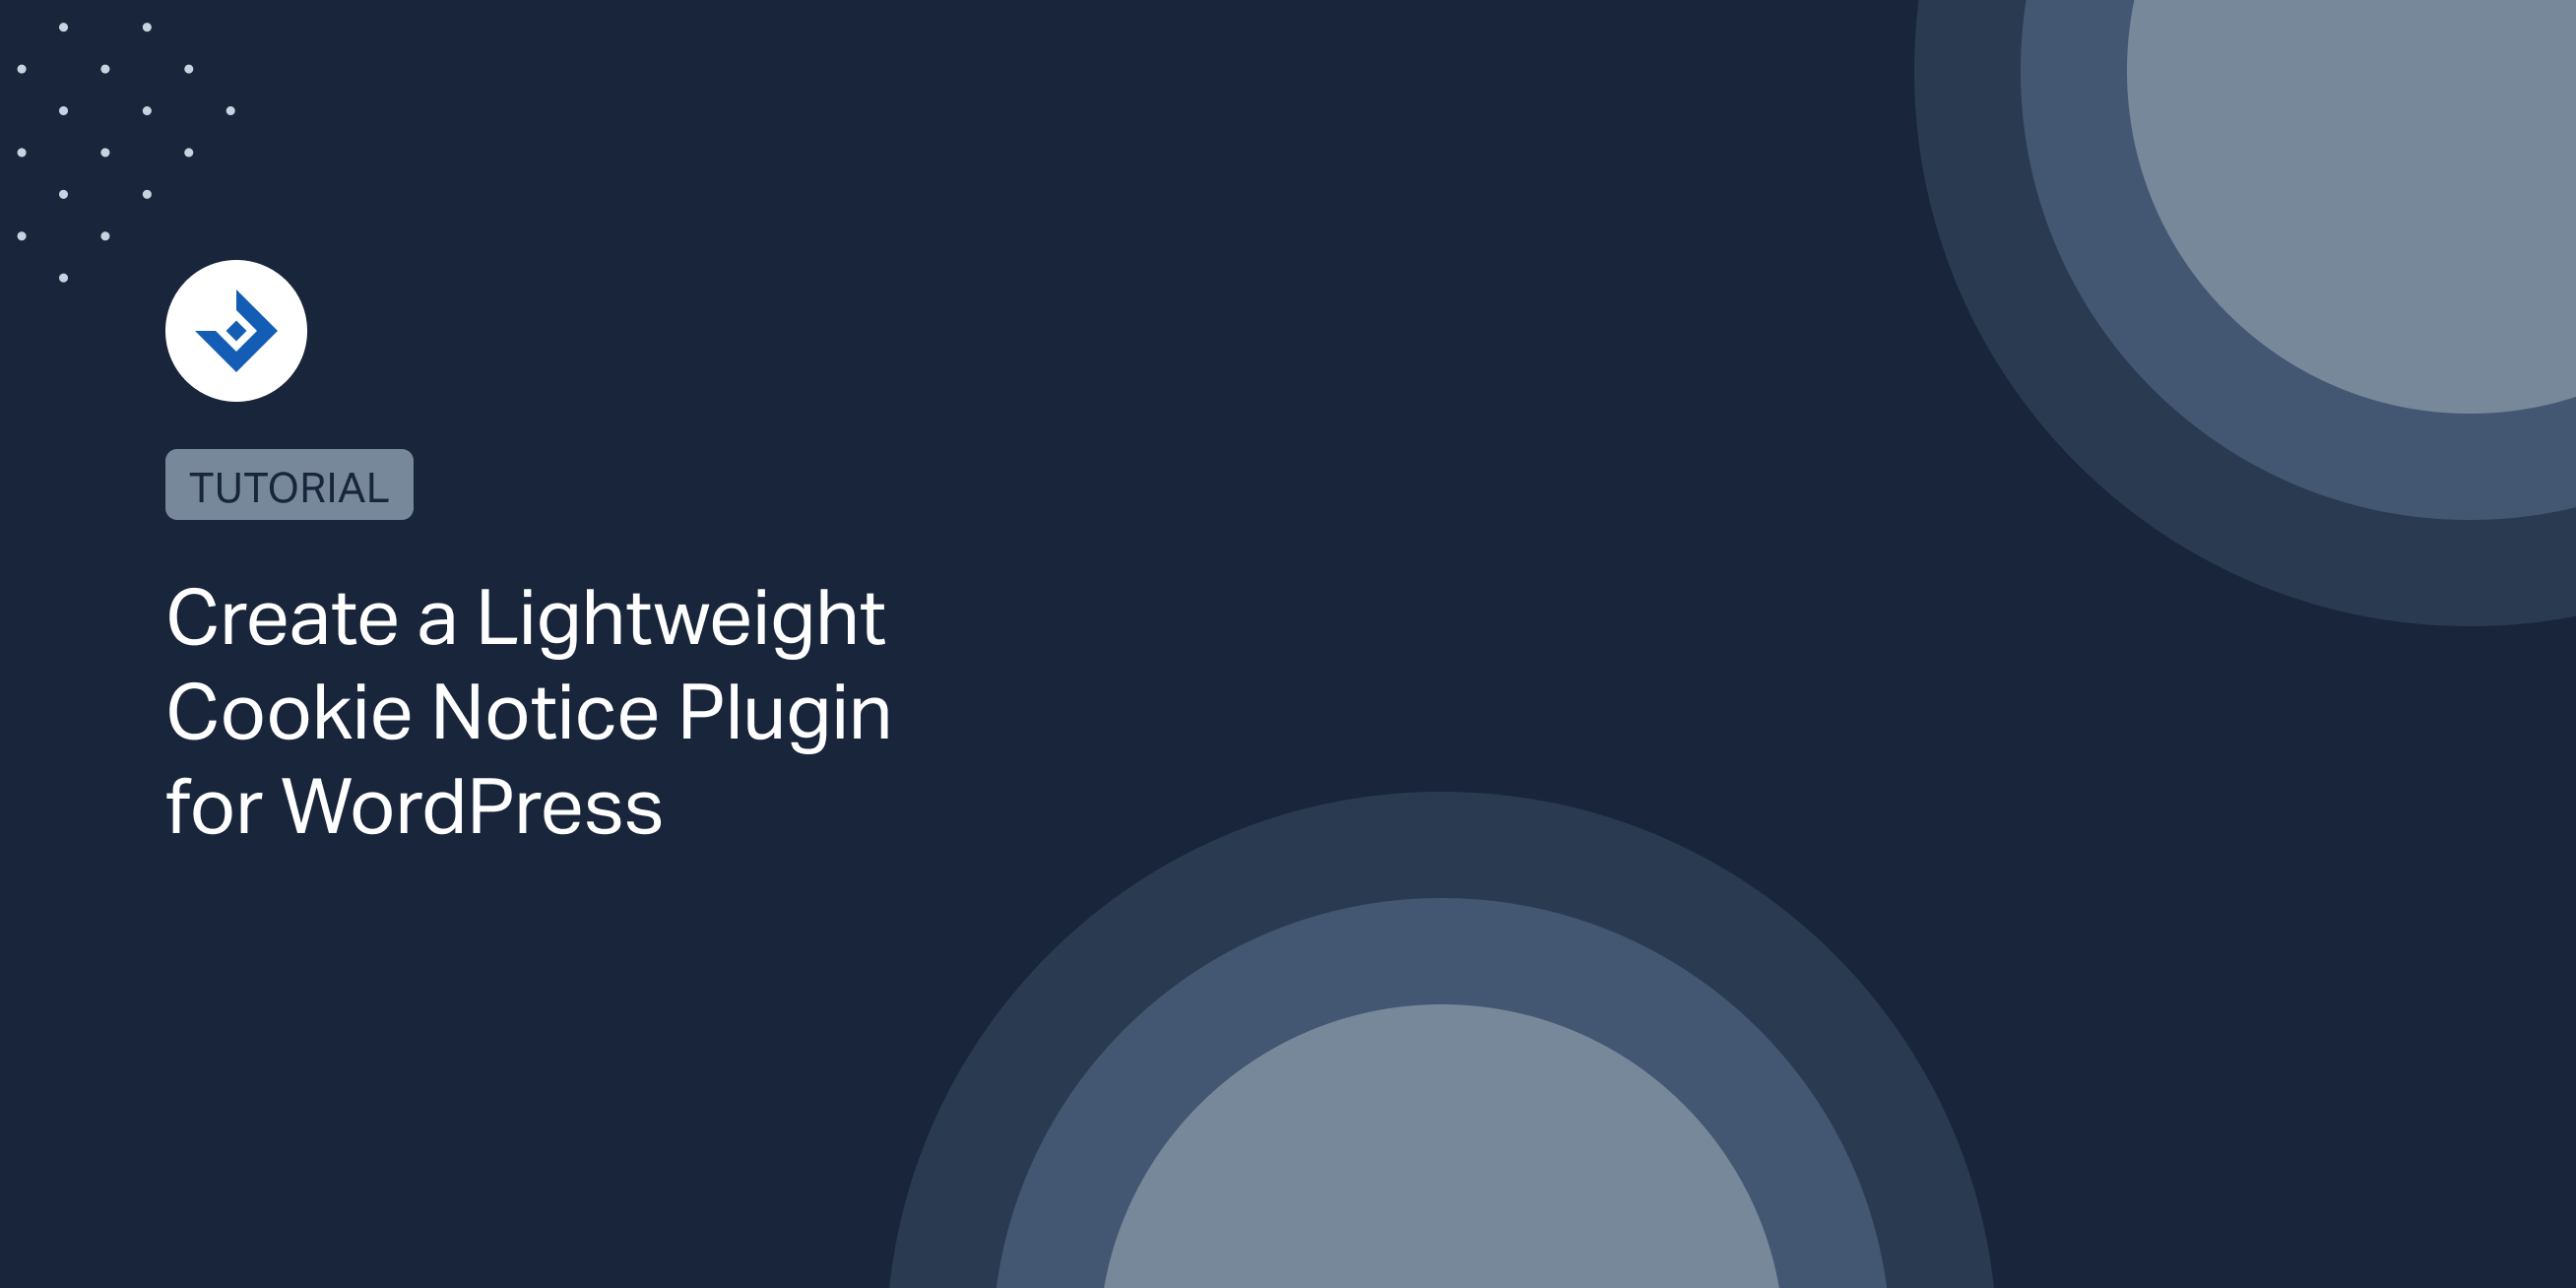 Create a Lightweight Cookie Notice Plugin for WordPress